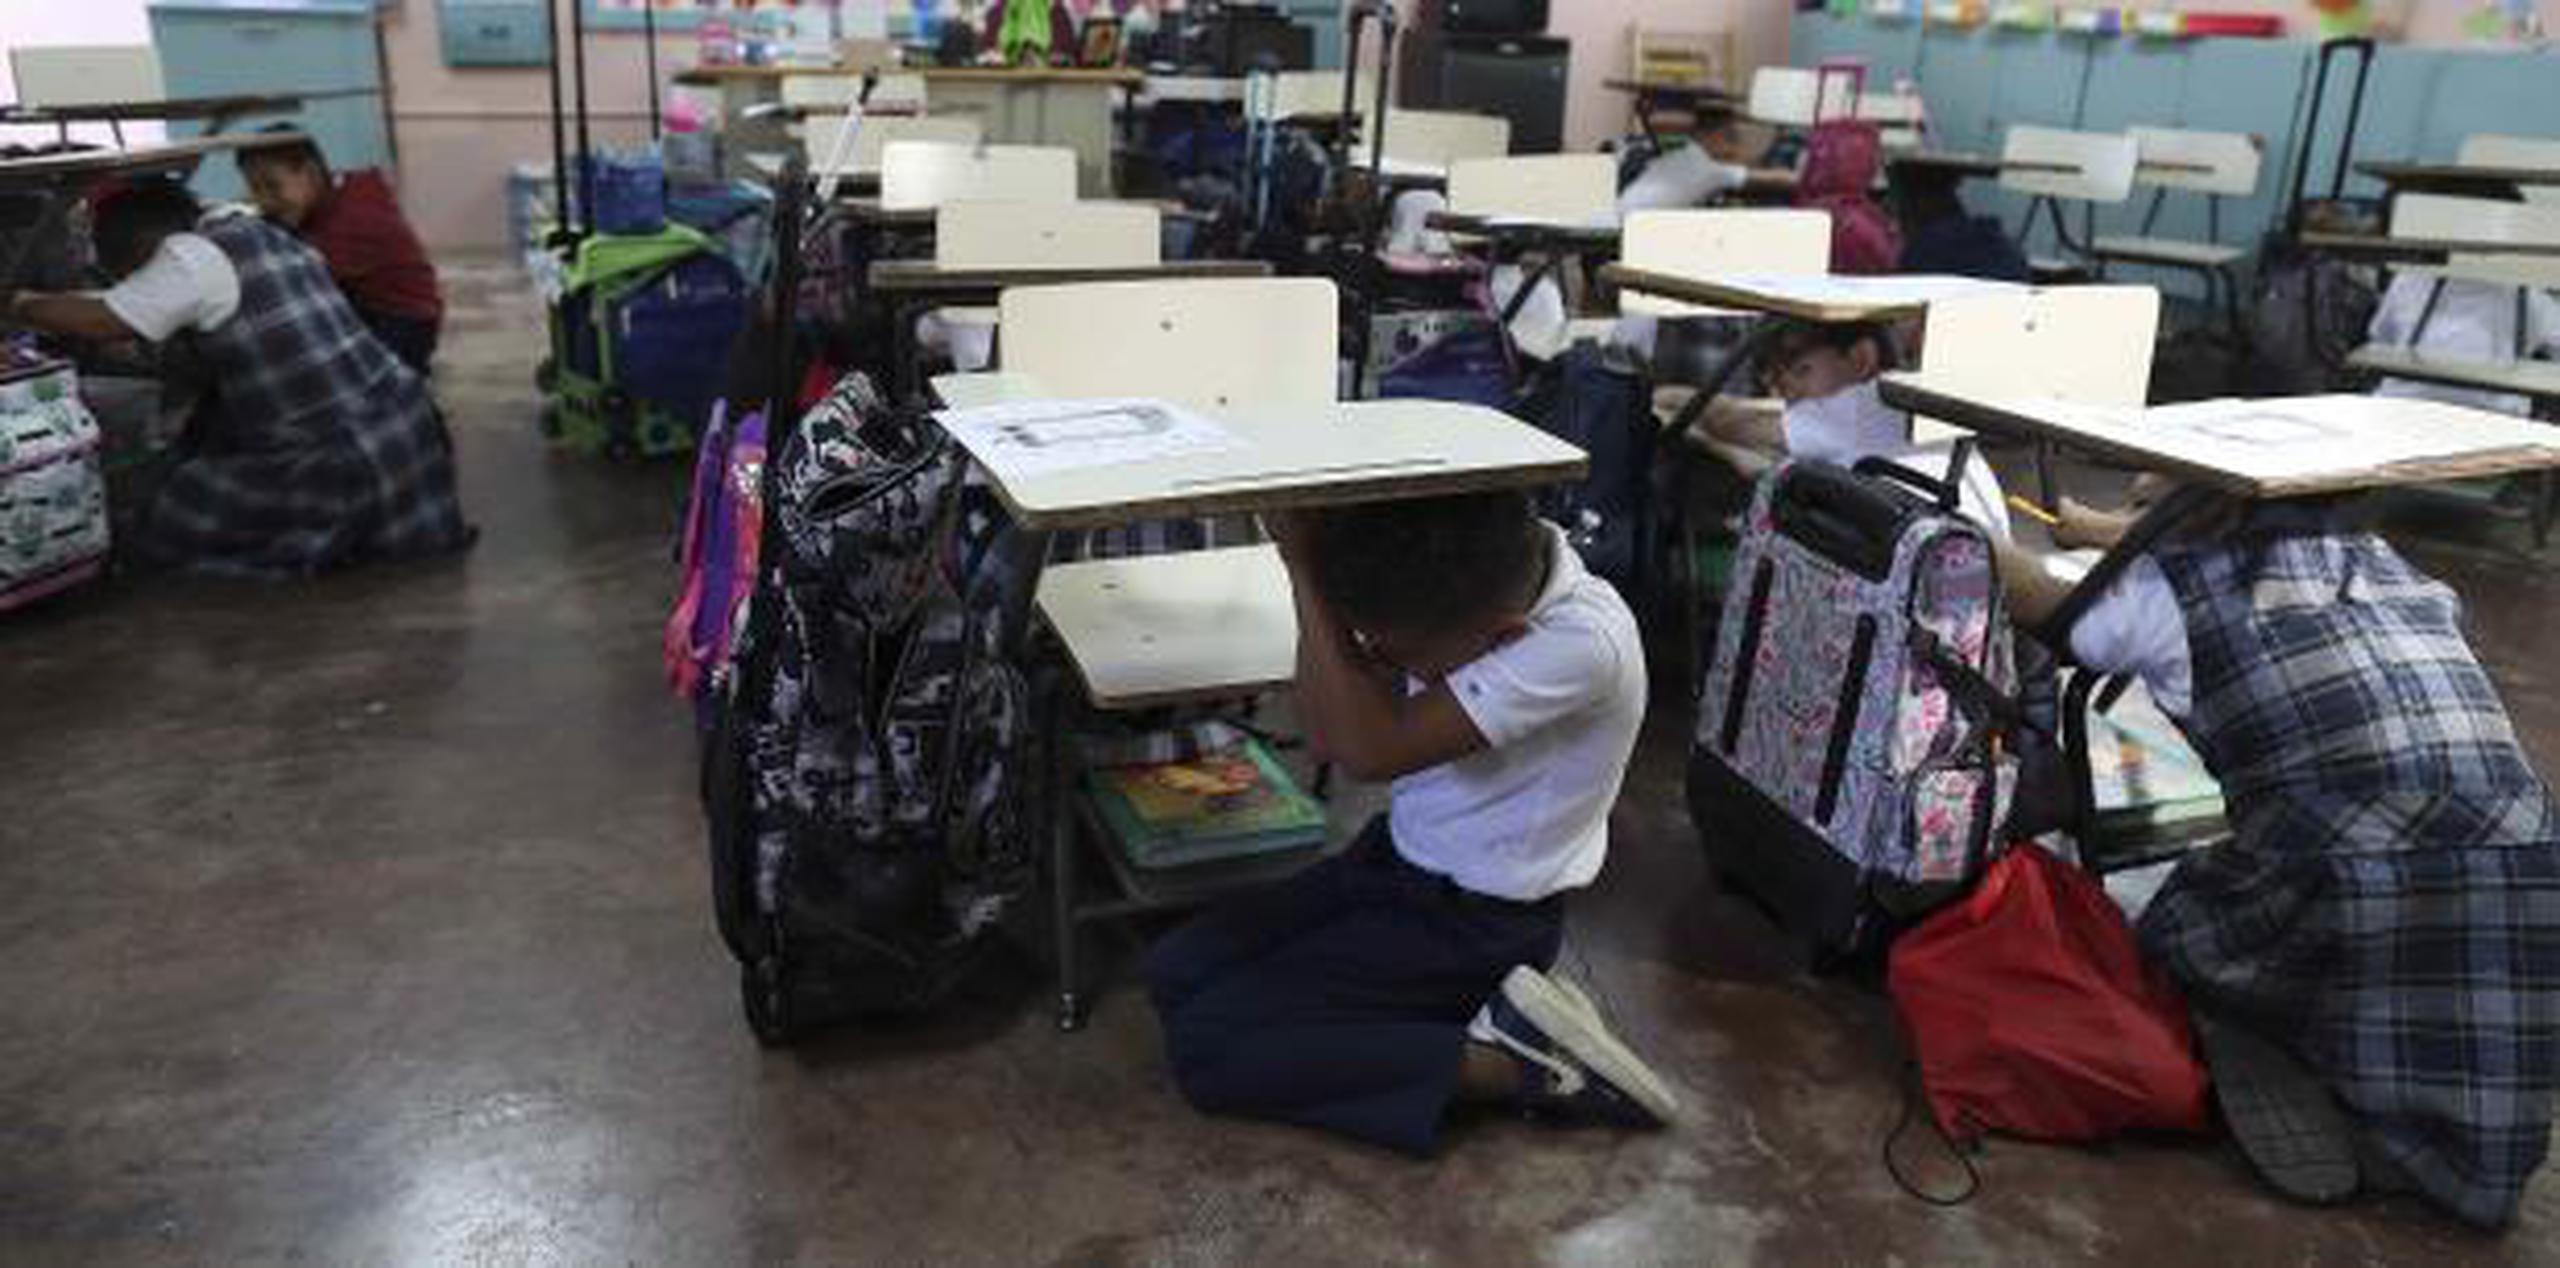 Los estudiantes de la escuela elemental Luz Eneida Colón, en San Juan, practicaron cómo reaccionar en caso de un terremoto. (vanessa.serra@gfrmedia.com)